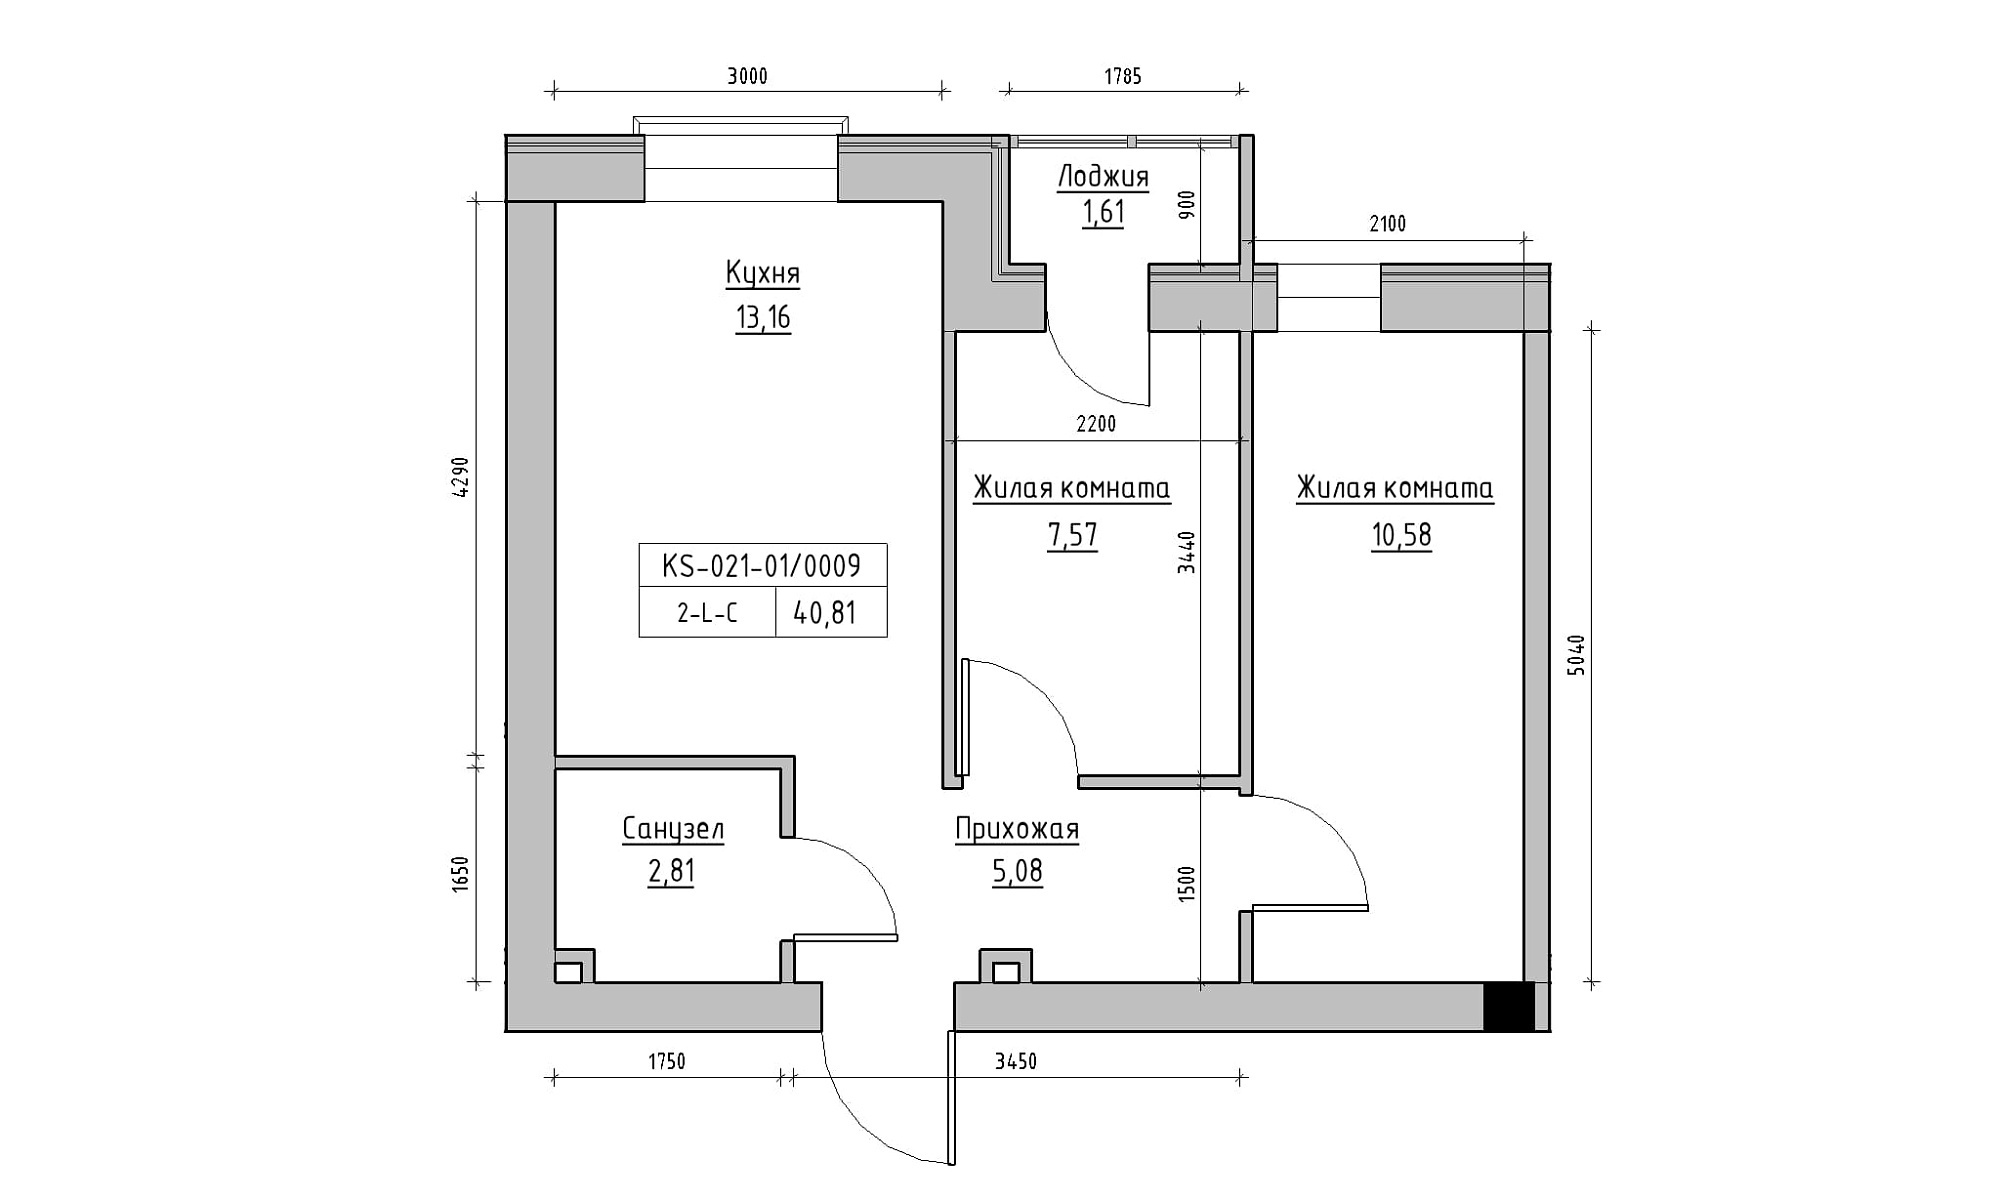 Планування 2-к квартира площею 40.81м2, KS-021-01/0009.